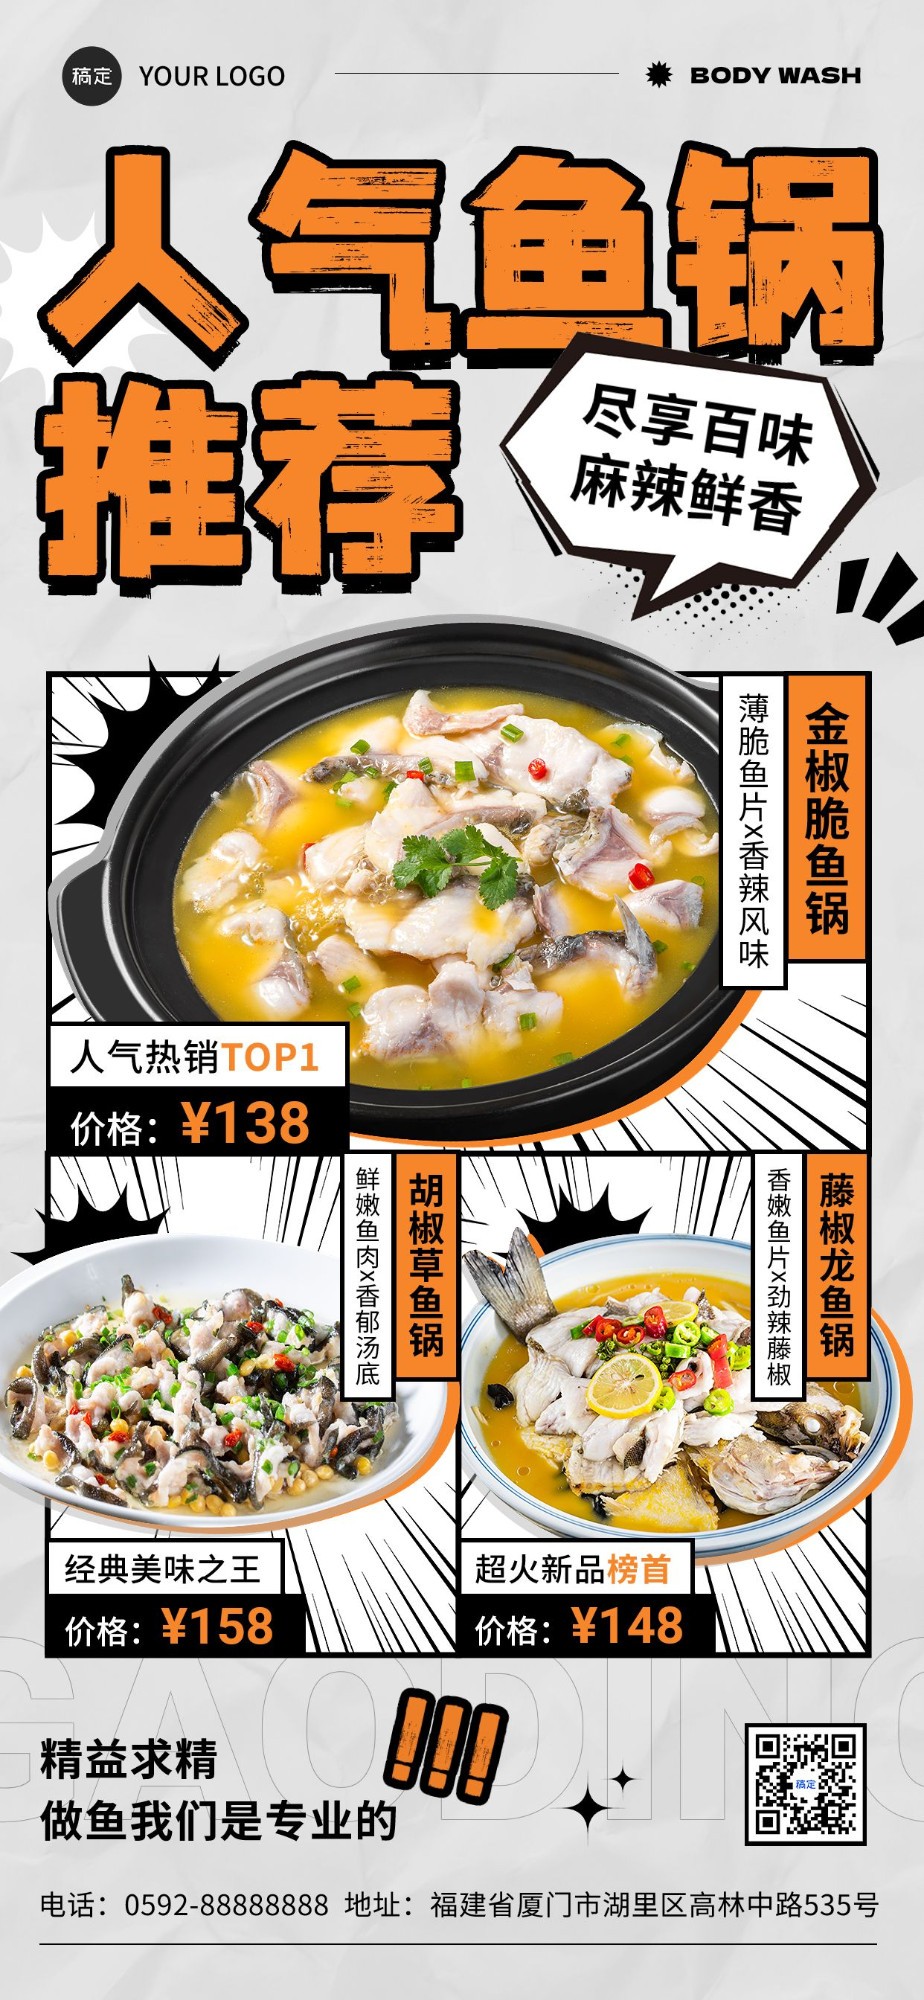 餐饮美食中式正餐热门产品菜单潮流图框全屏竖版海报预览效果